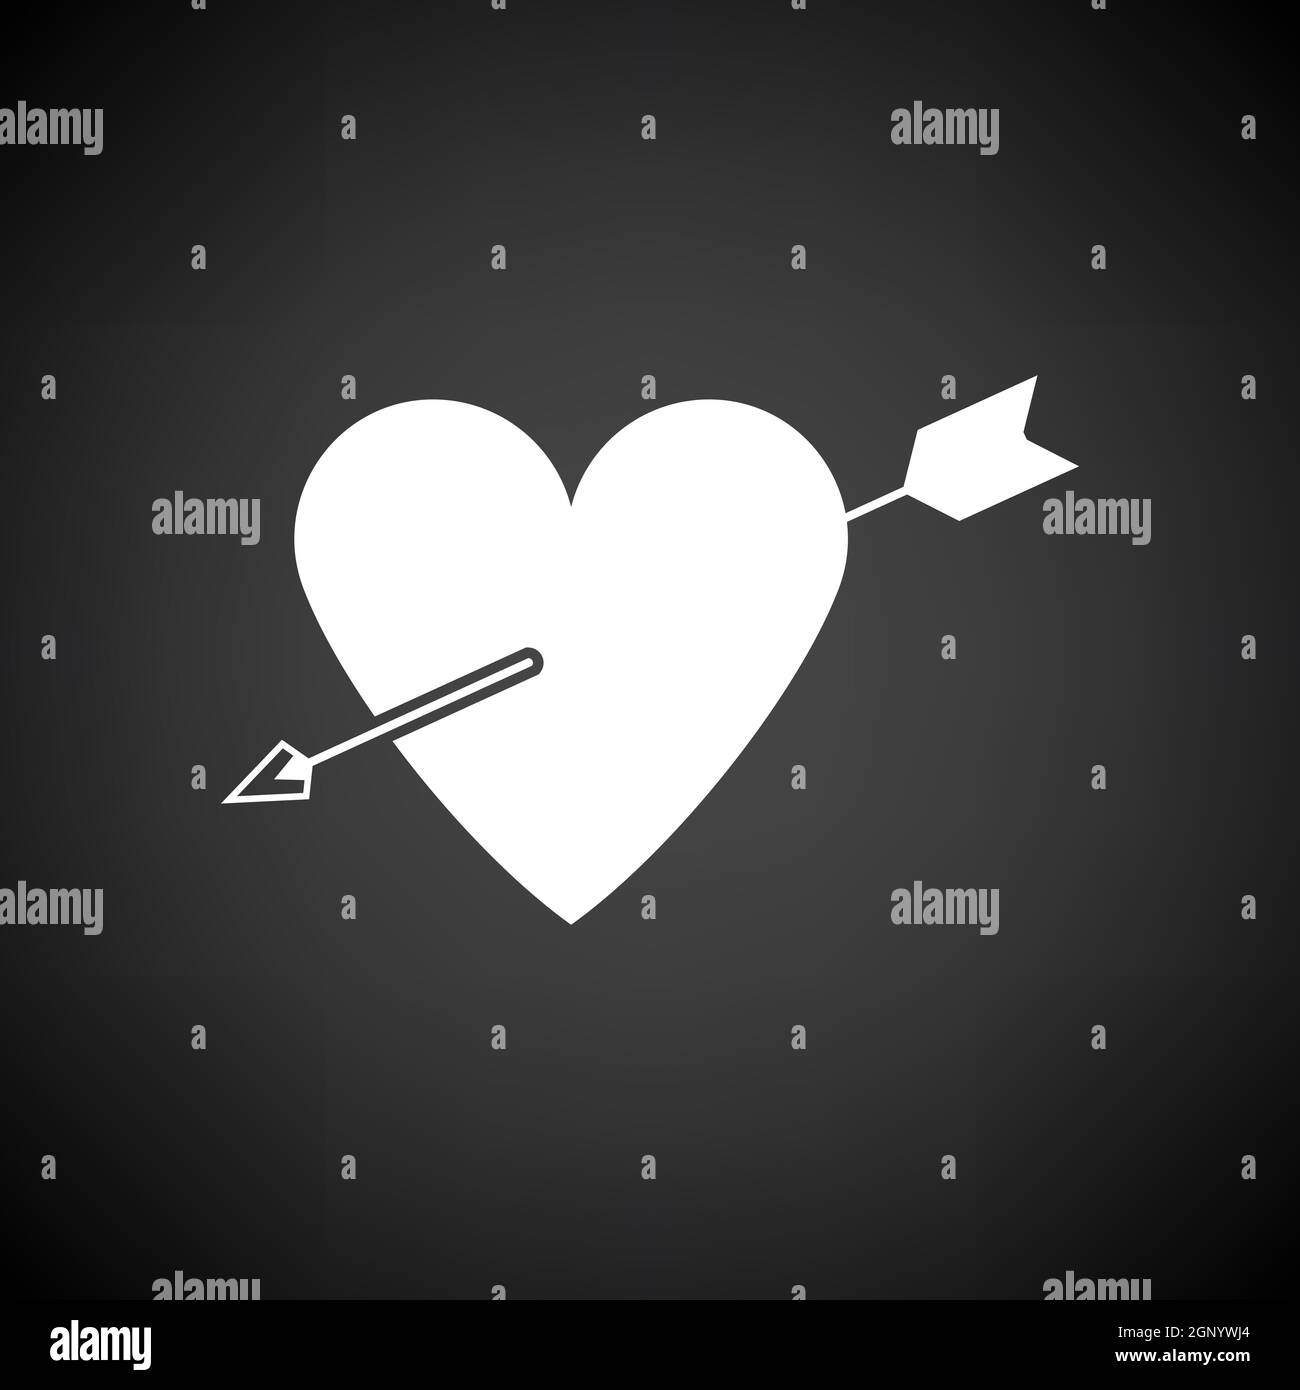 Cœur percé par l'icône de flèche Illustration de Vecteur